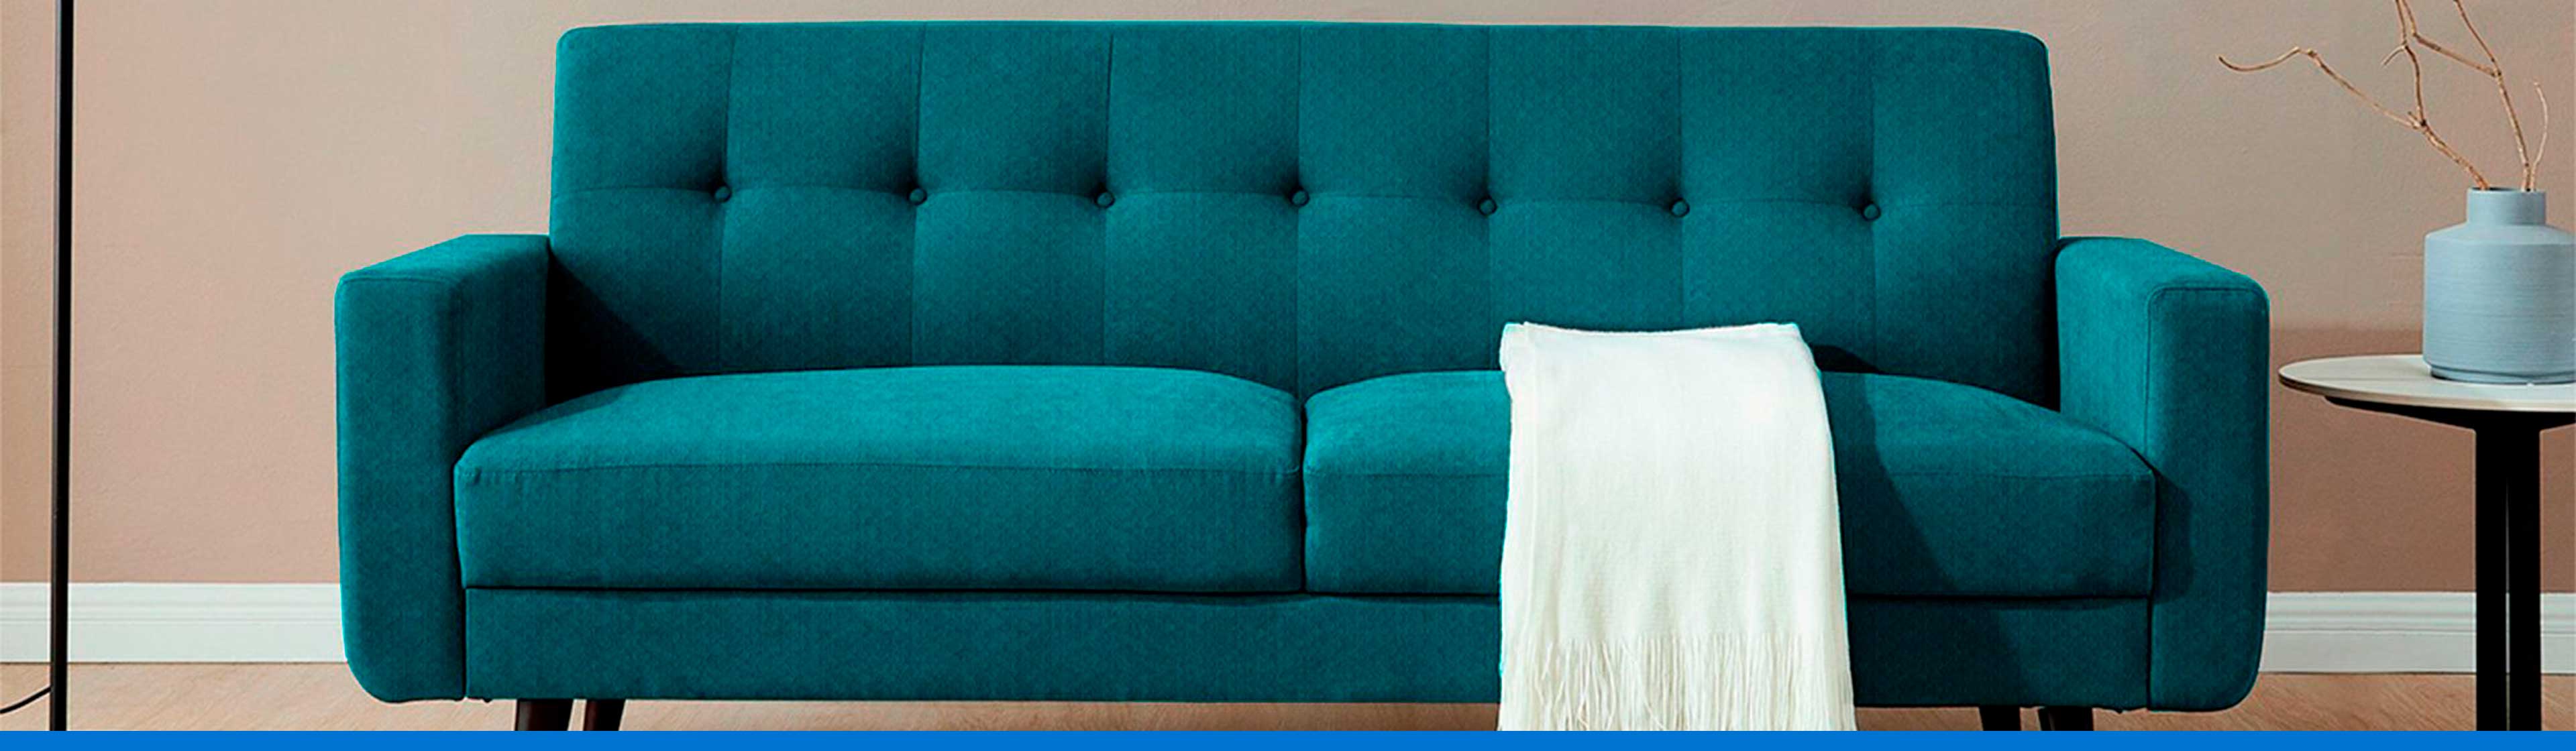 sofa turquesa